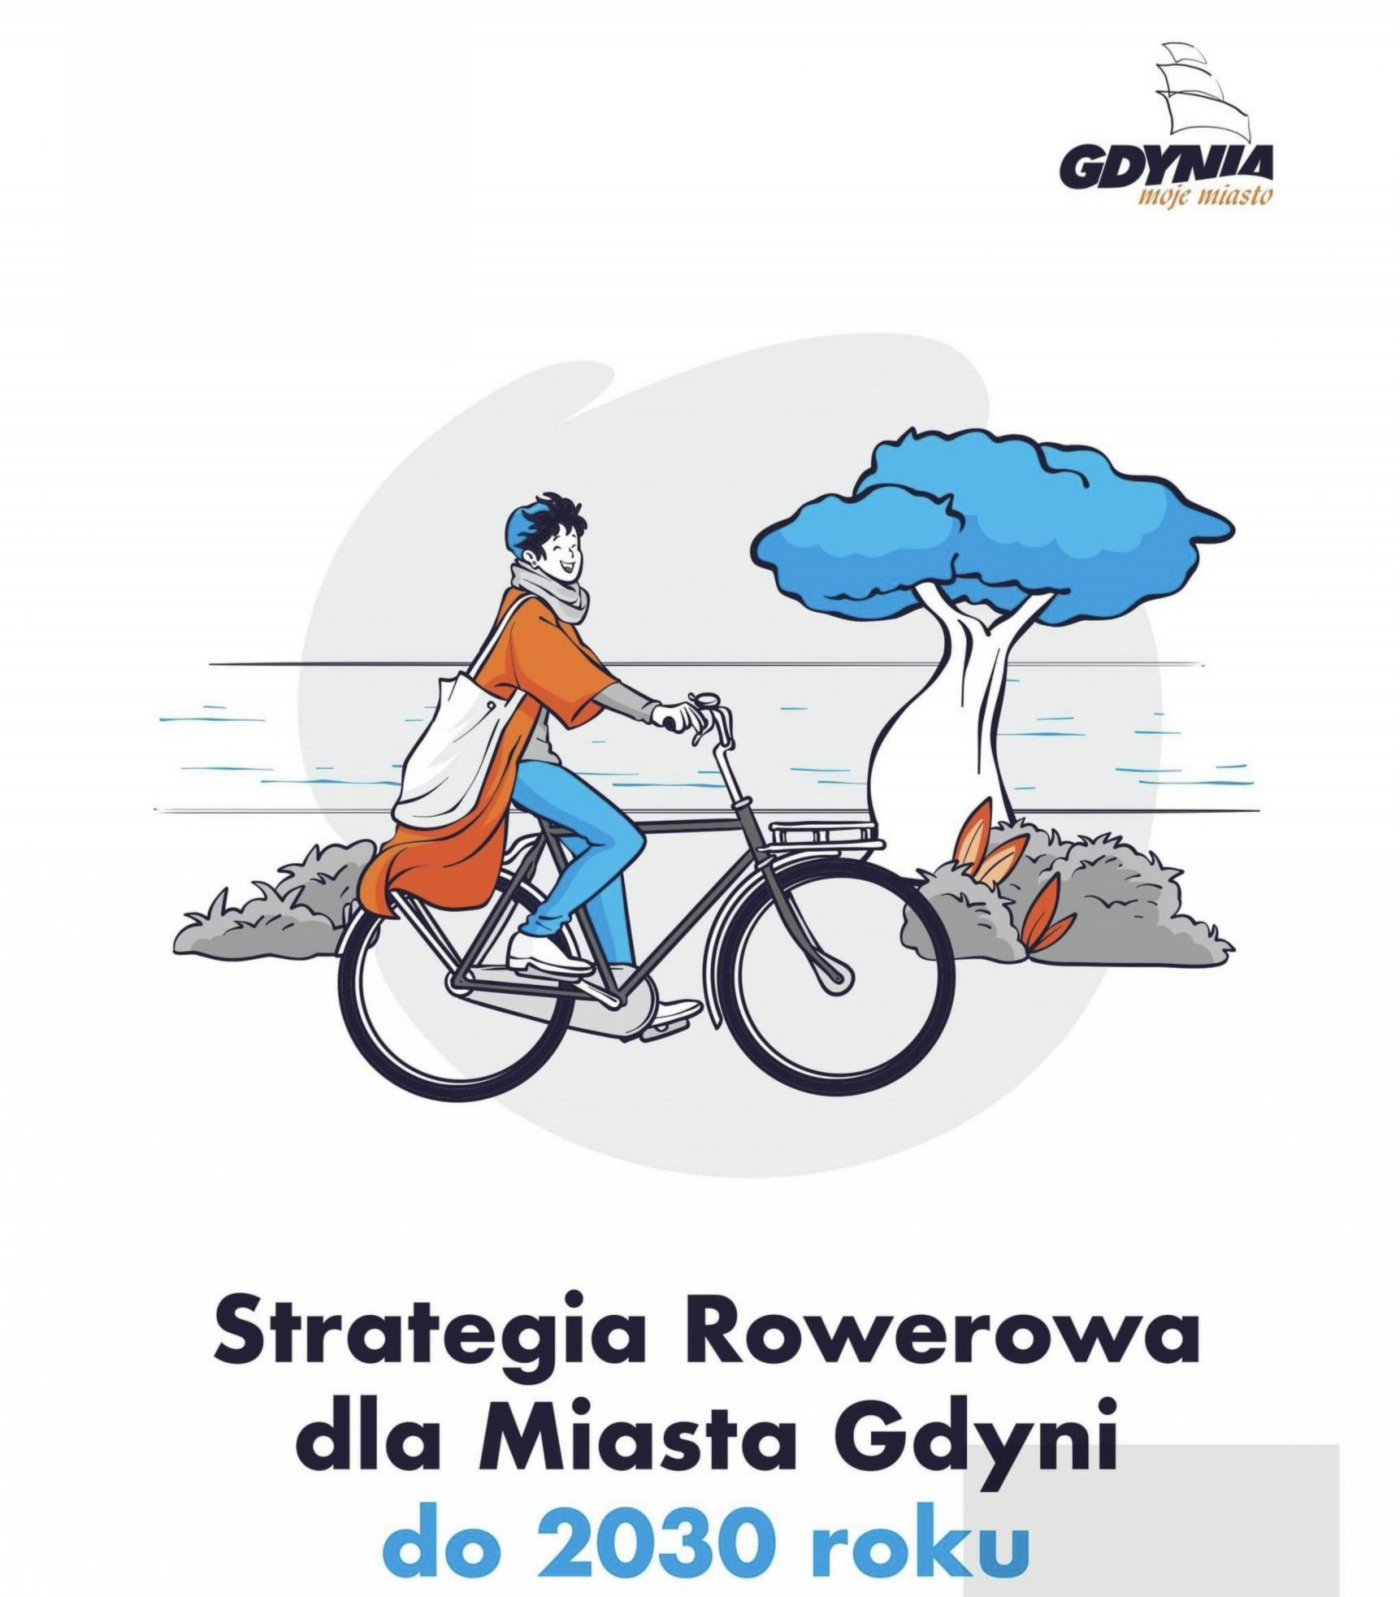 Strategia Rowerowa dla Miasta Gdyni do roku 2030, rowerzysta, grafika, mat. prasowe Gdynia Mobilna